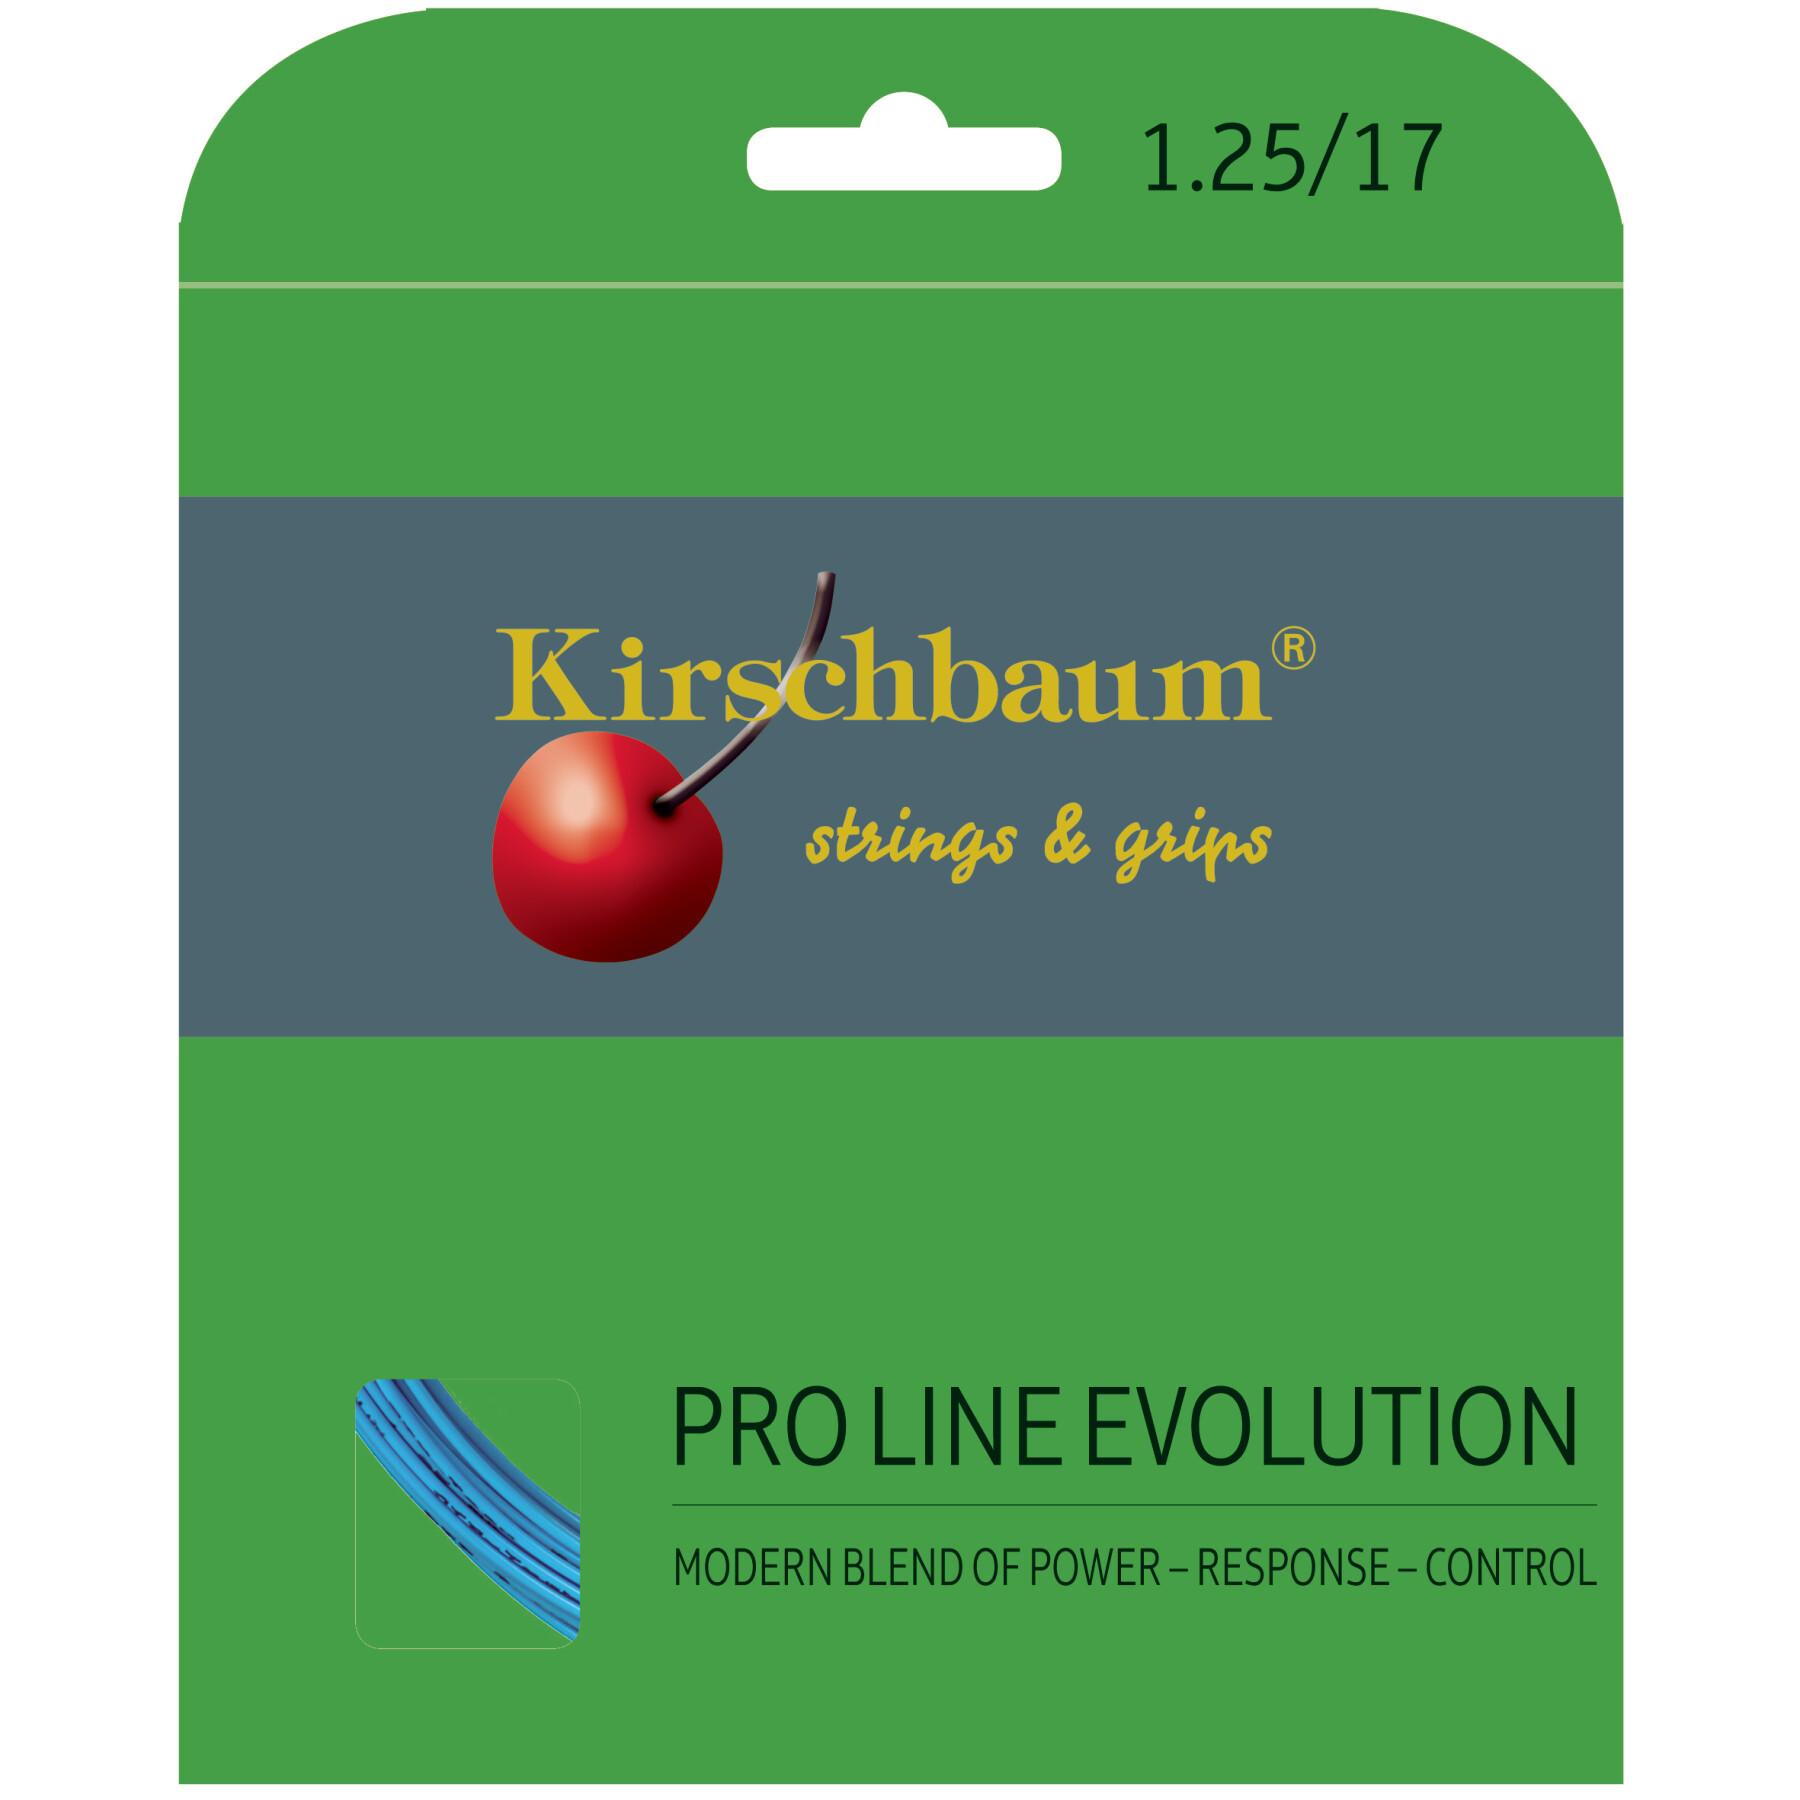 Tennis strings Kirschbaum Max Pro Line Evolution 12 m